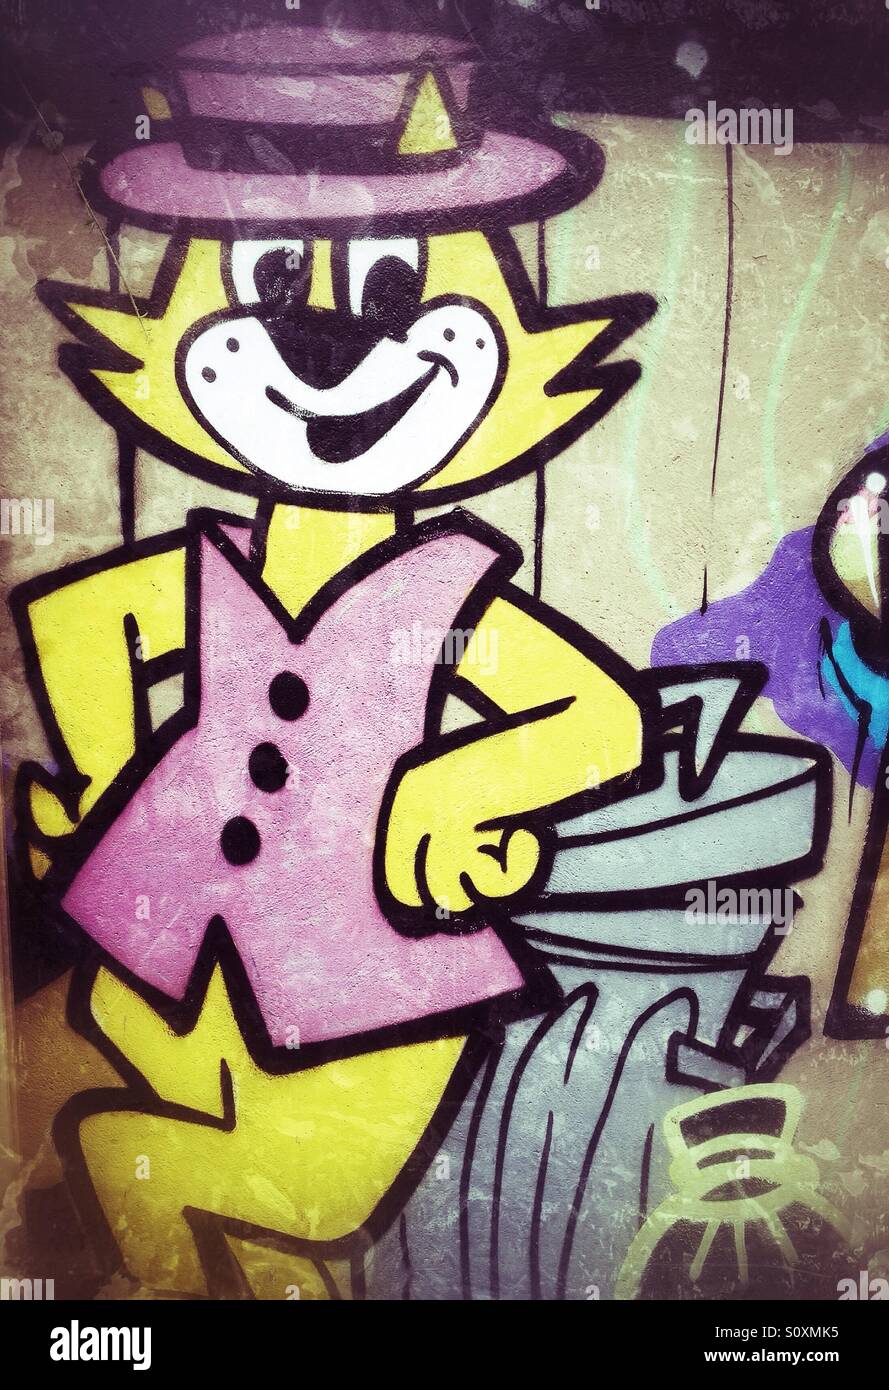 Graffiti of Top Cat cartoon character Stock Photo